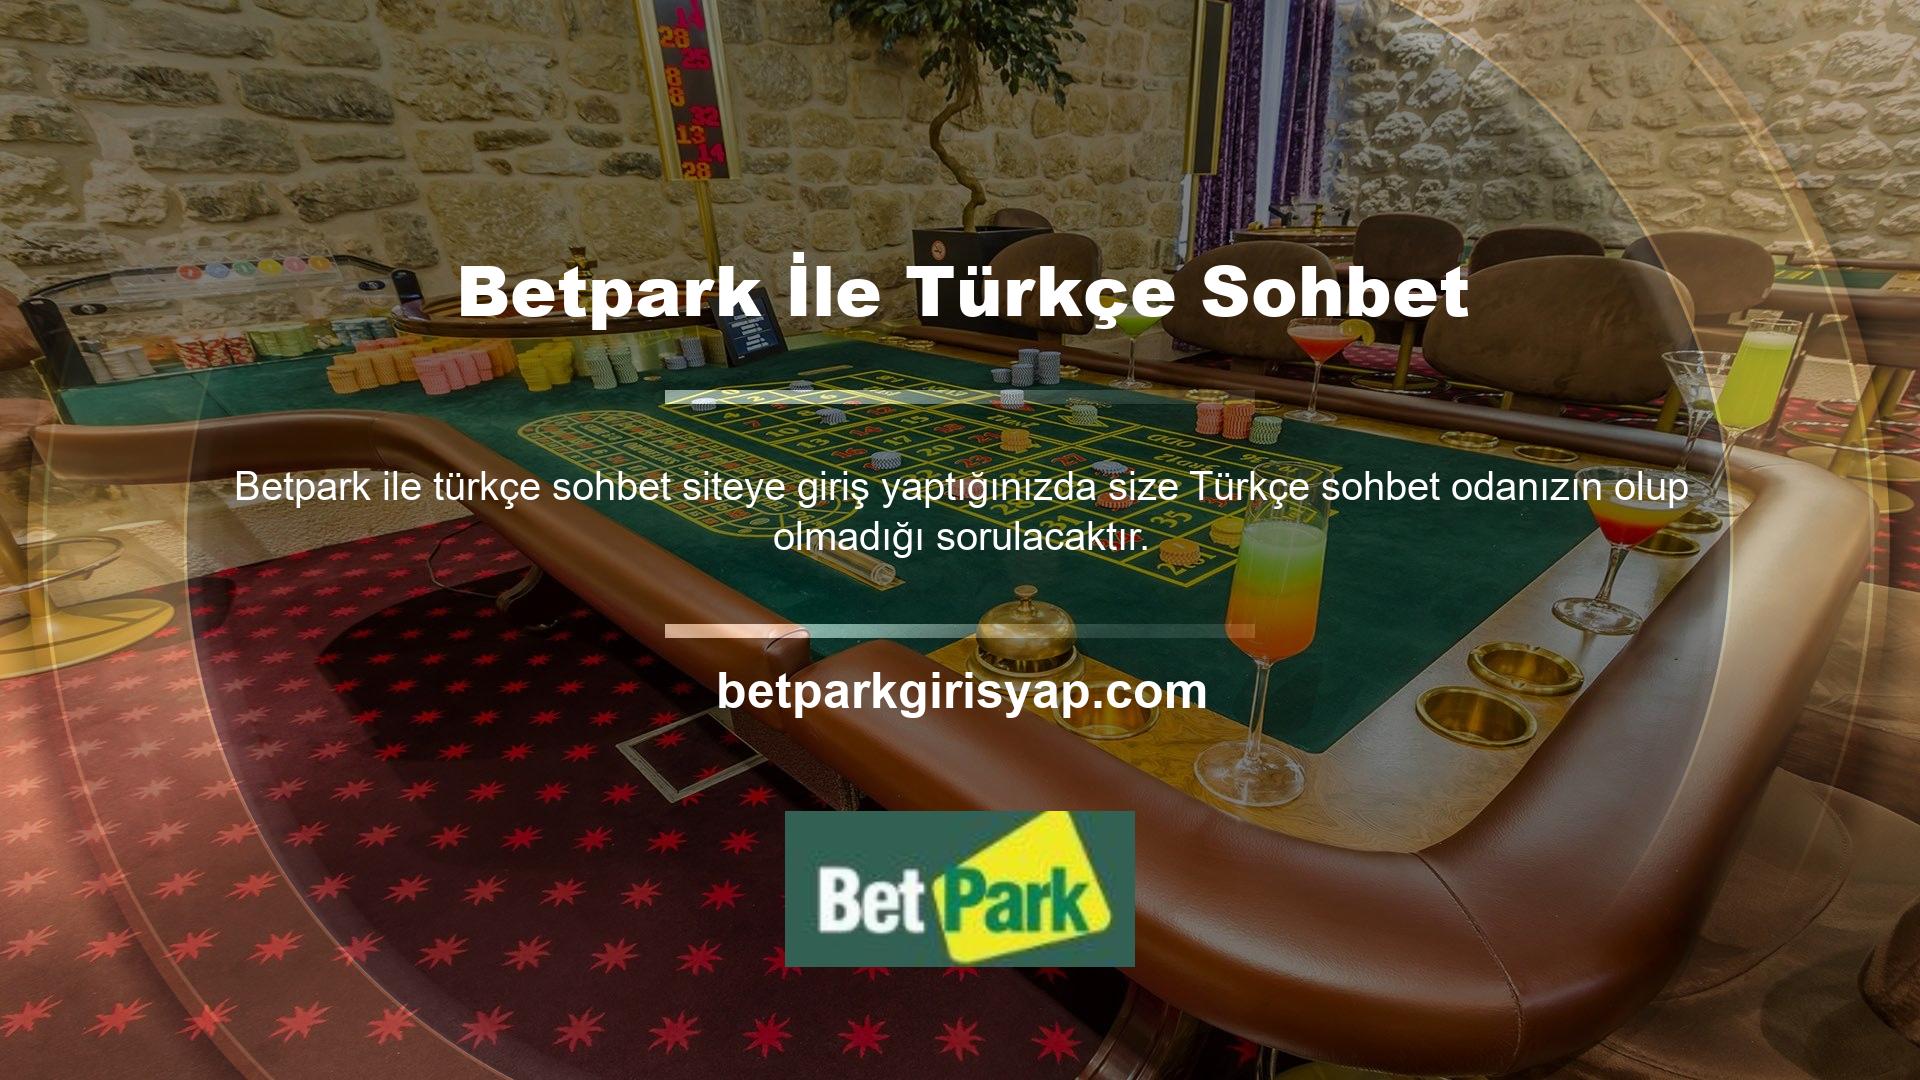 Betpark ile Türkçe sohbet, gerçek oyunlar, online oyunlar, canlı oyunlar konusunda işbirliği yapmak istiyorsanız açık olup olmadığı size bildirilecektir